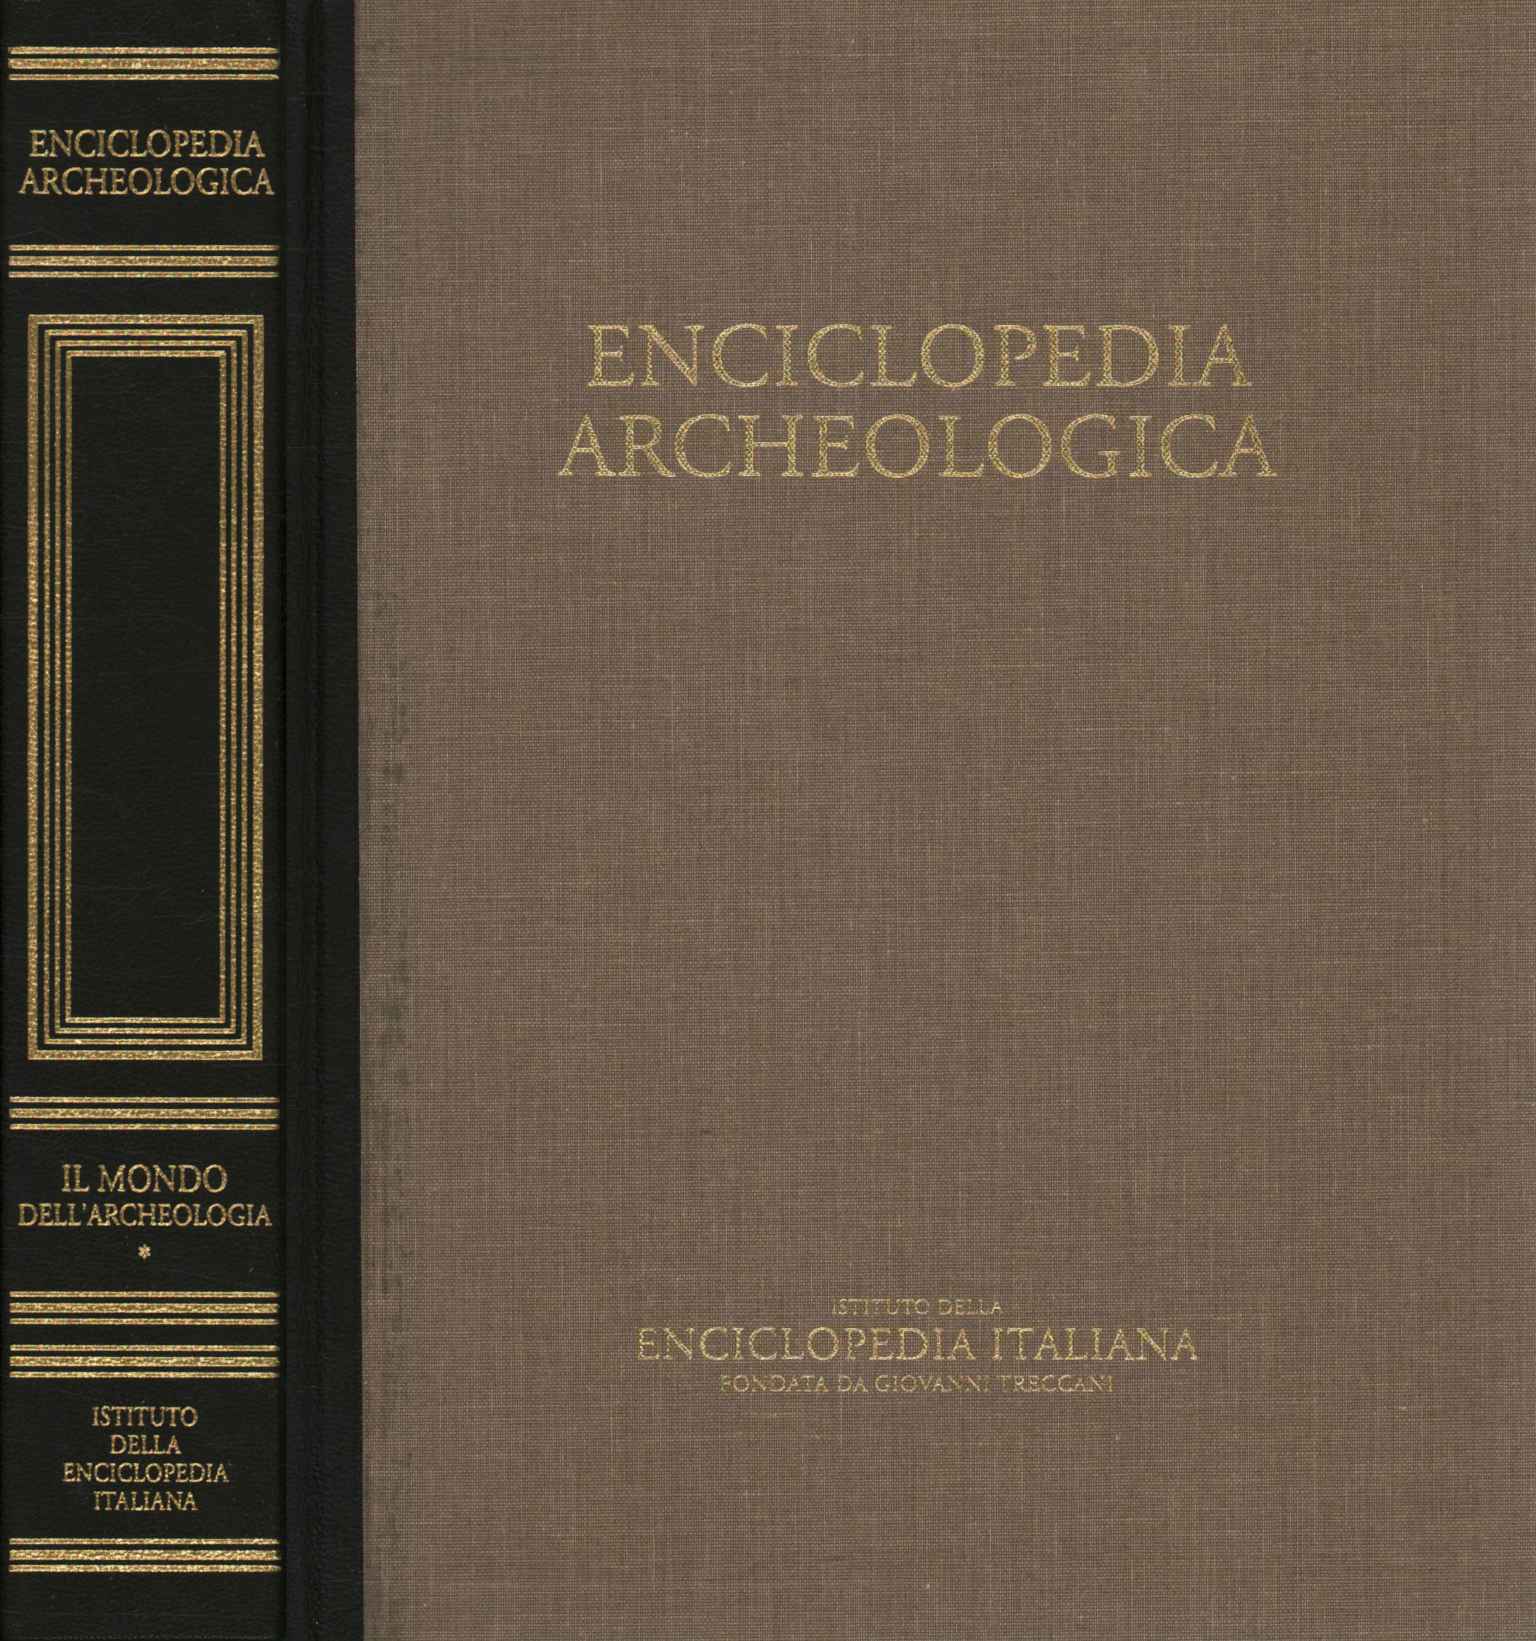 Archäologische Enzyklopädie (Band I),Archäologische Enzyklopädie. Die Welt von 0a